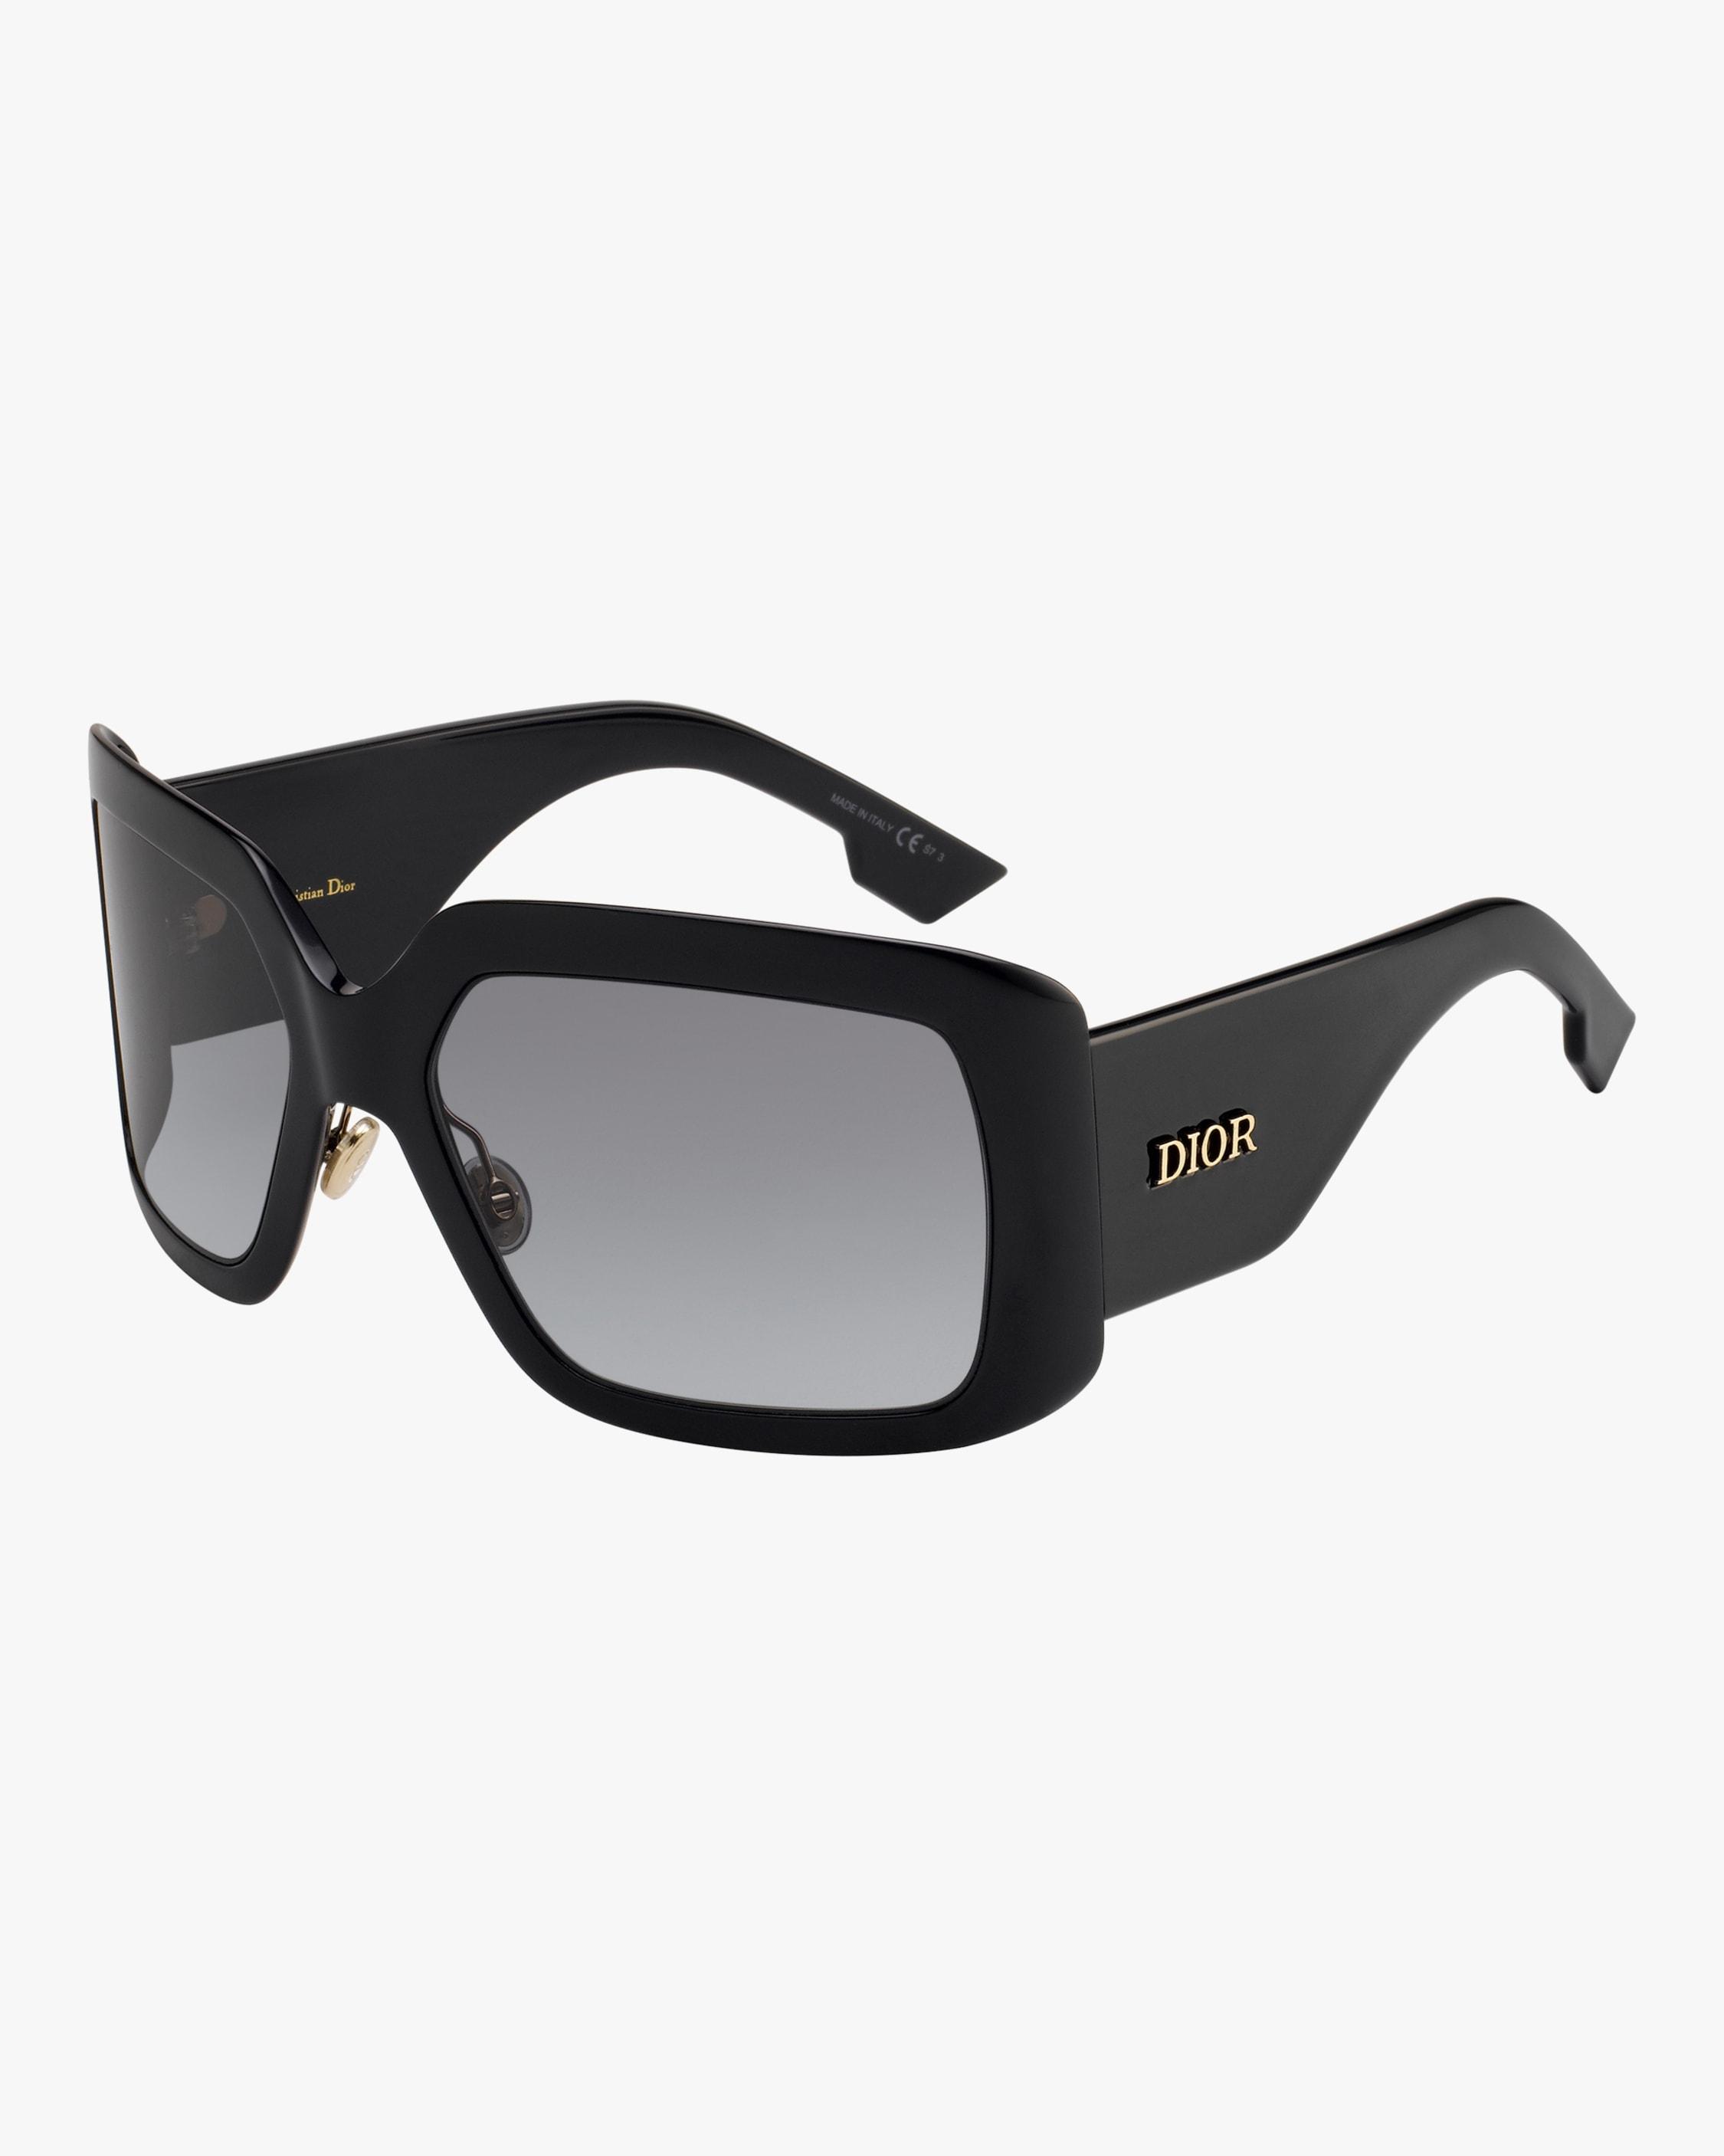 Dior So Light 2 Square Sunglasses in Black - Lyst